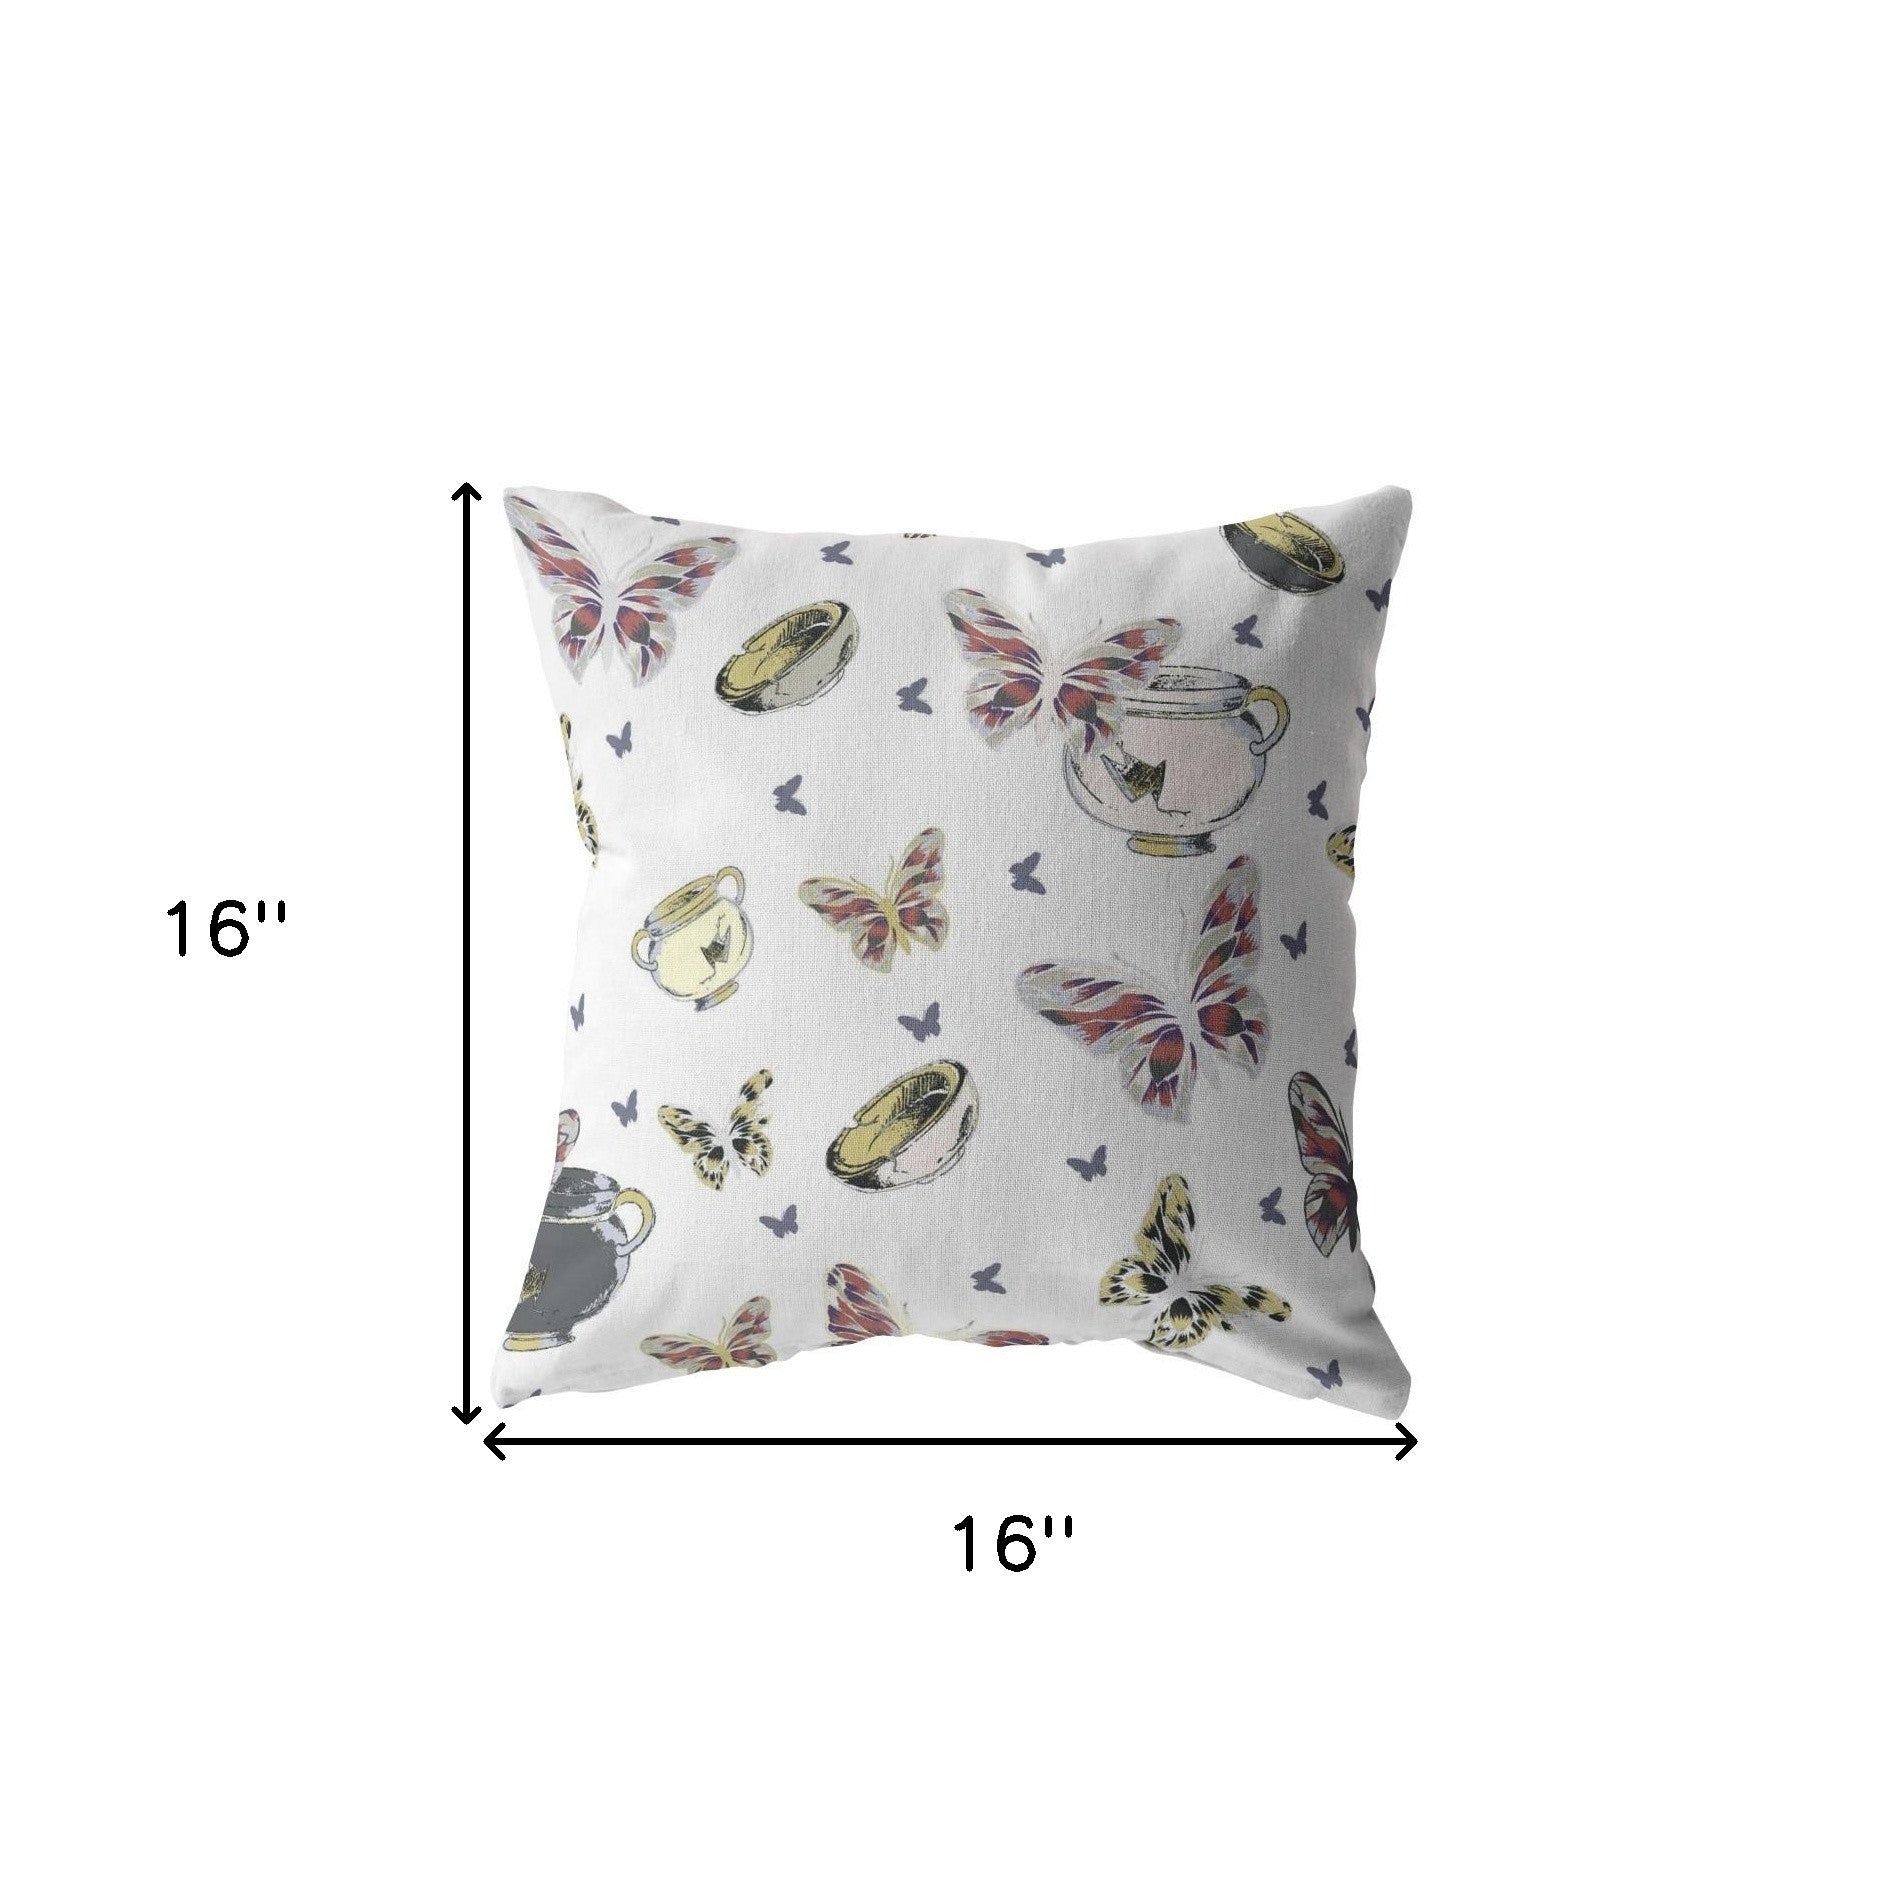 16" White Butterflies Indoor Outdoor Throw Pillow